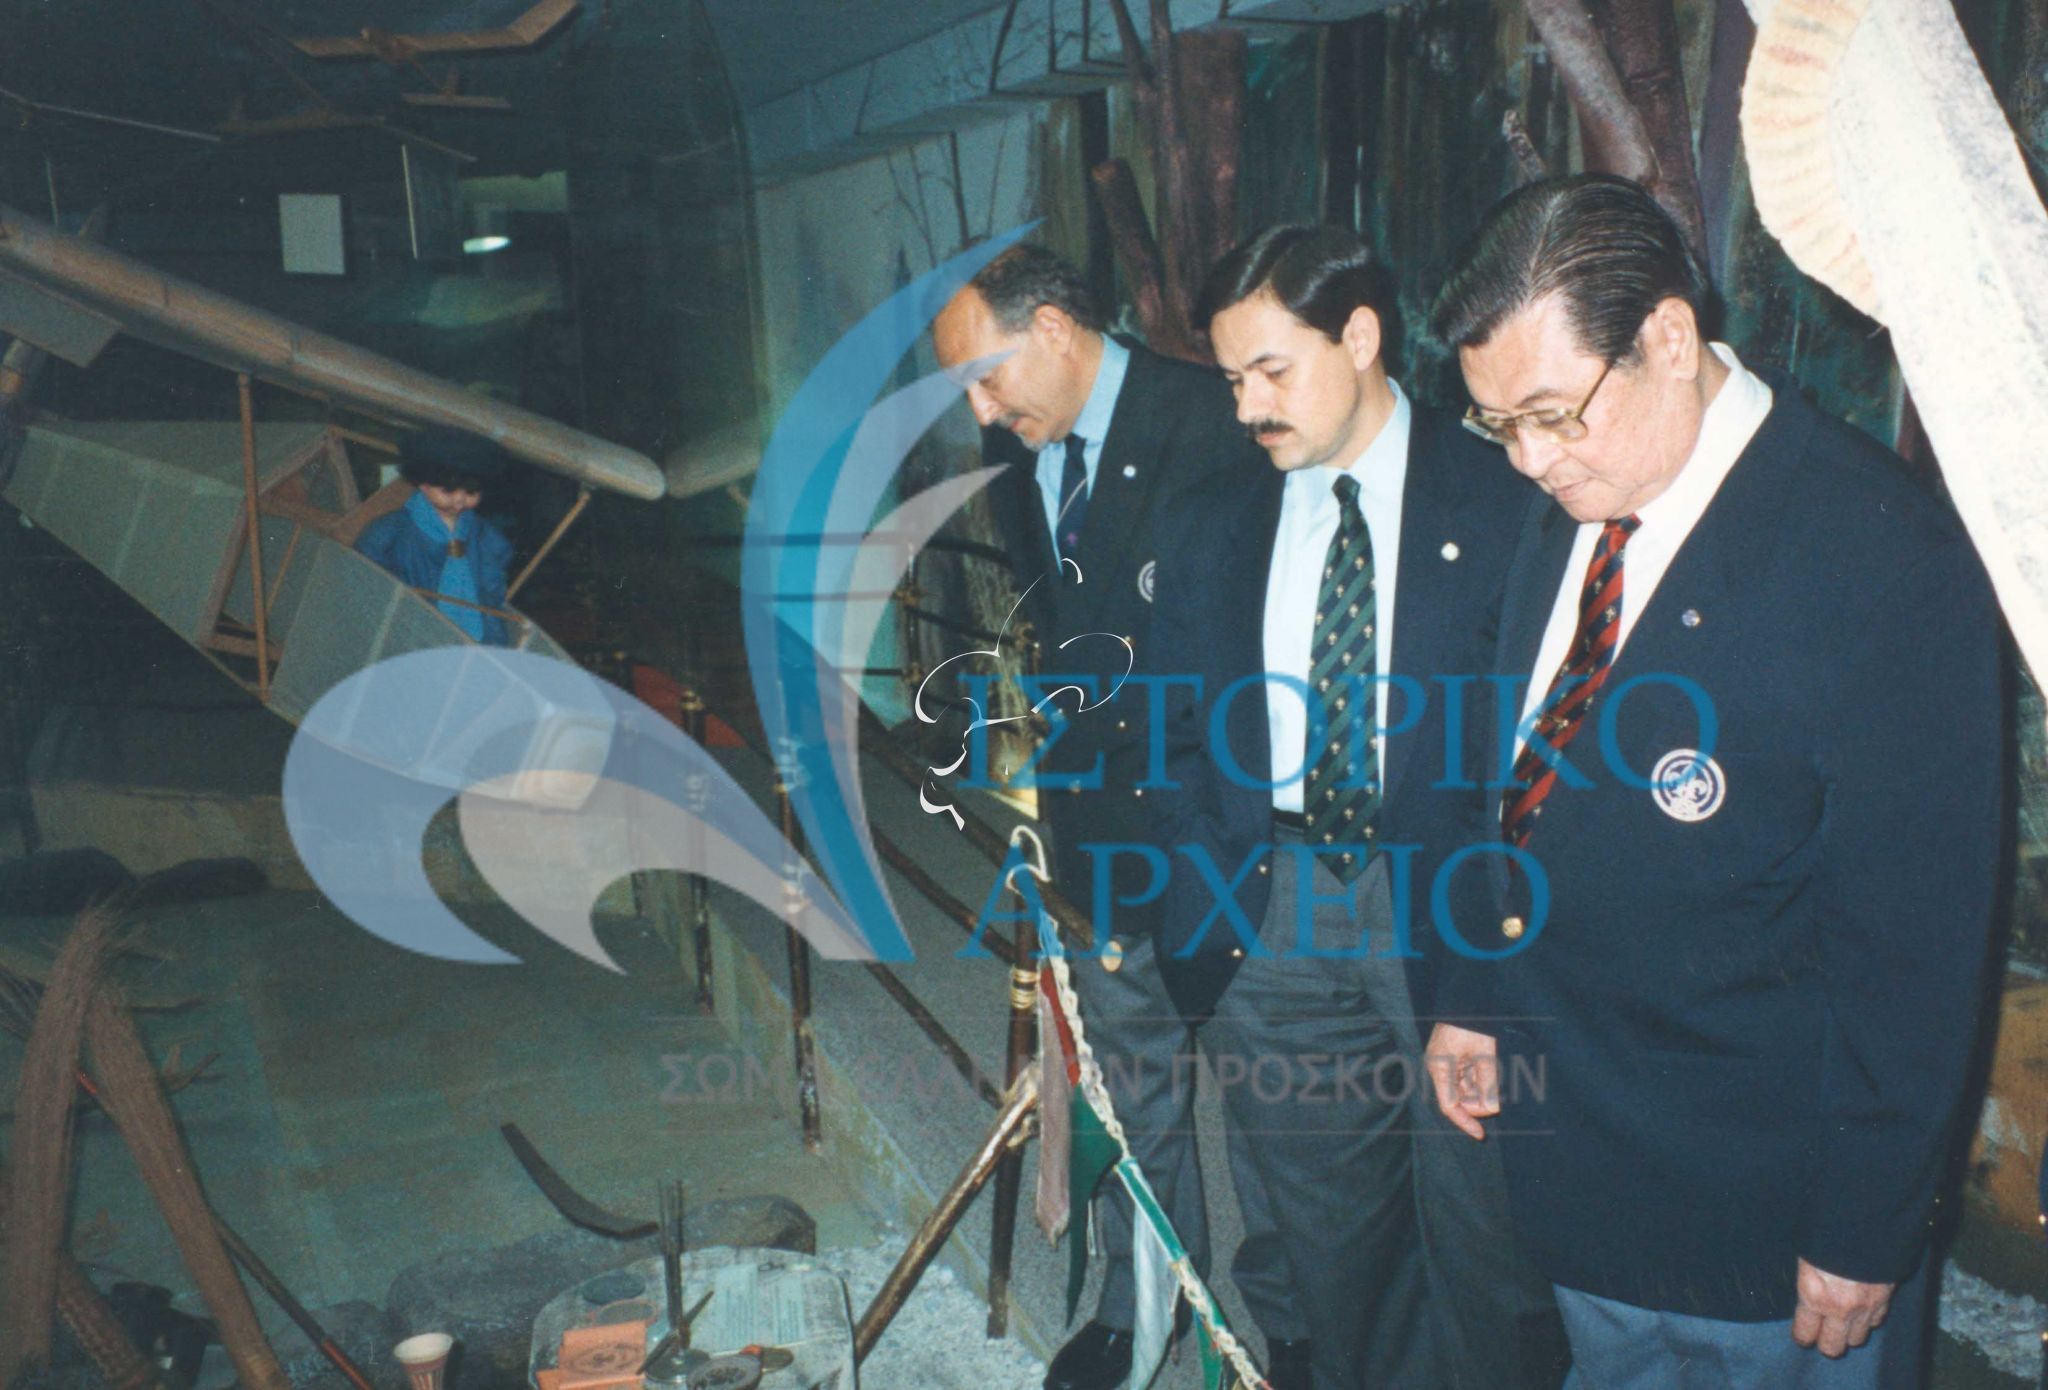 Το στέλεχος του Παγκοσμίου Προσκοπικού Γραφείου Φράνκι Ρόουμαν σε επίσκεψη στο Προσκοπικό Μουσείο του ΣΕΠ το 1998. Μαζί του ο Πρόεδρος ΔΣ ΣΕΠ Χρ. Λυγερός και ο έφορος Αν. Αρνιακός.